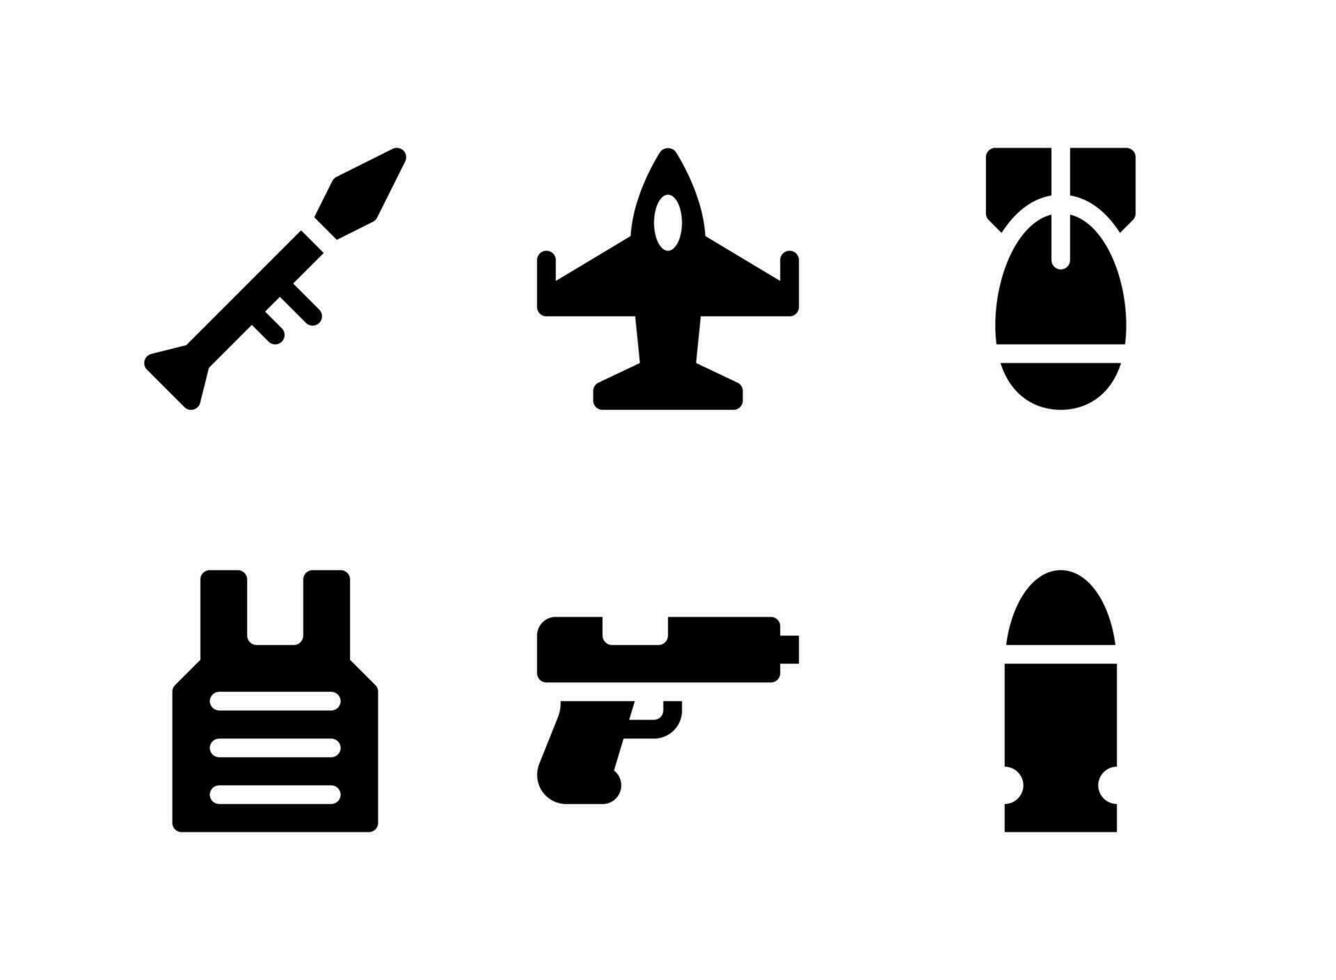 semplice set di icone solide vettoriali relative militari. contiene icone come bomba, kevlar, pistola, proiettile e altro ancora.